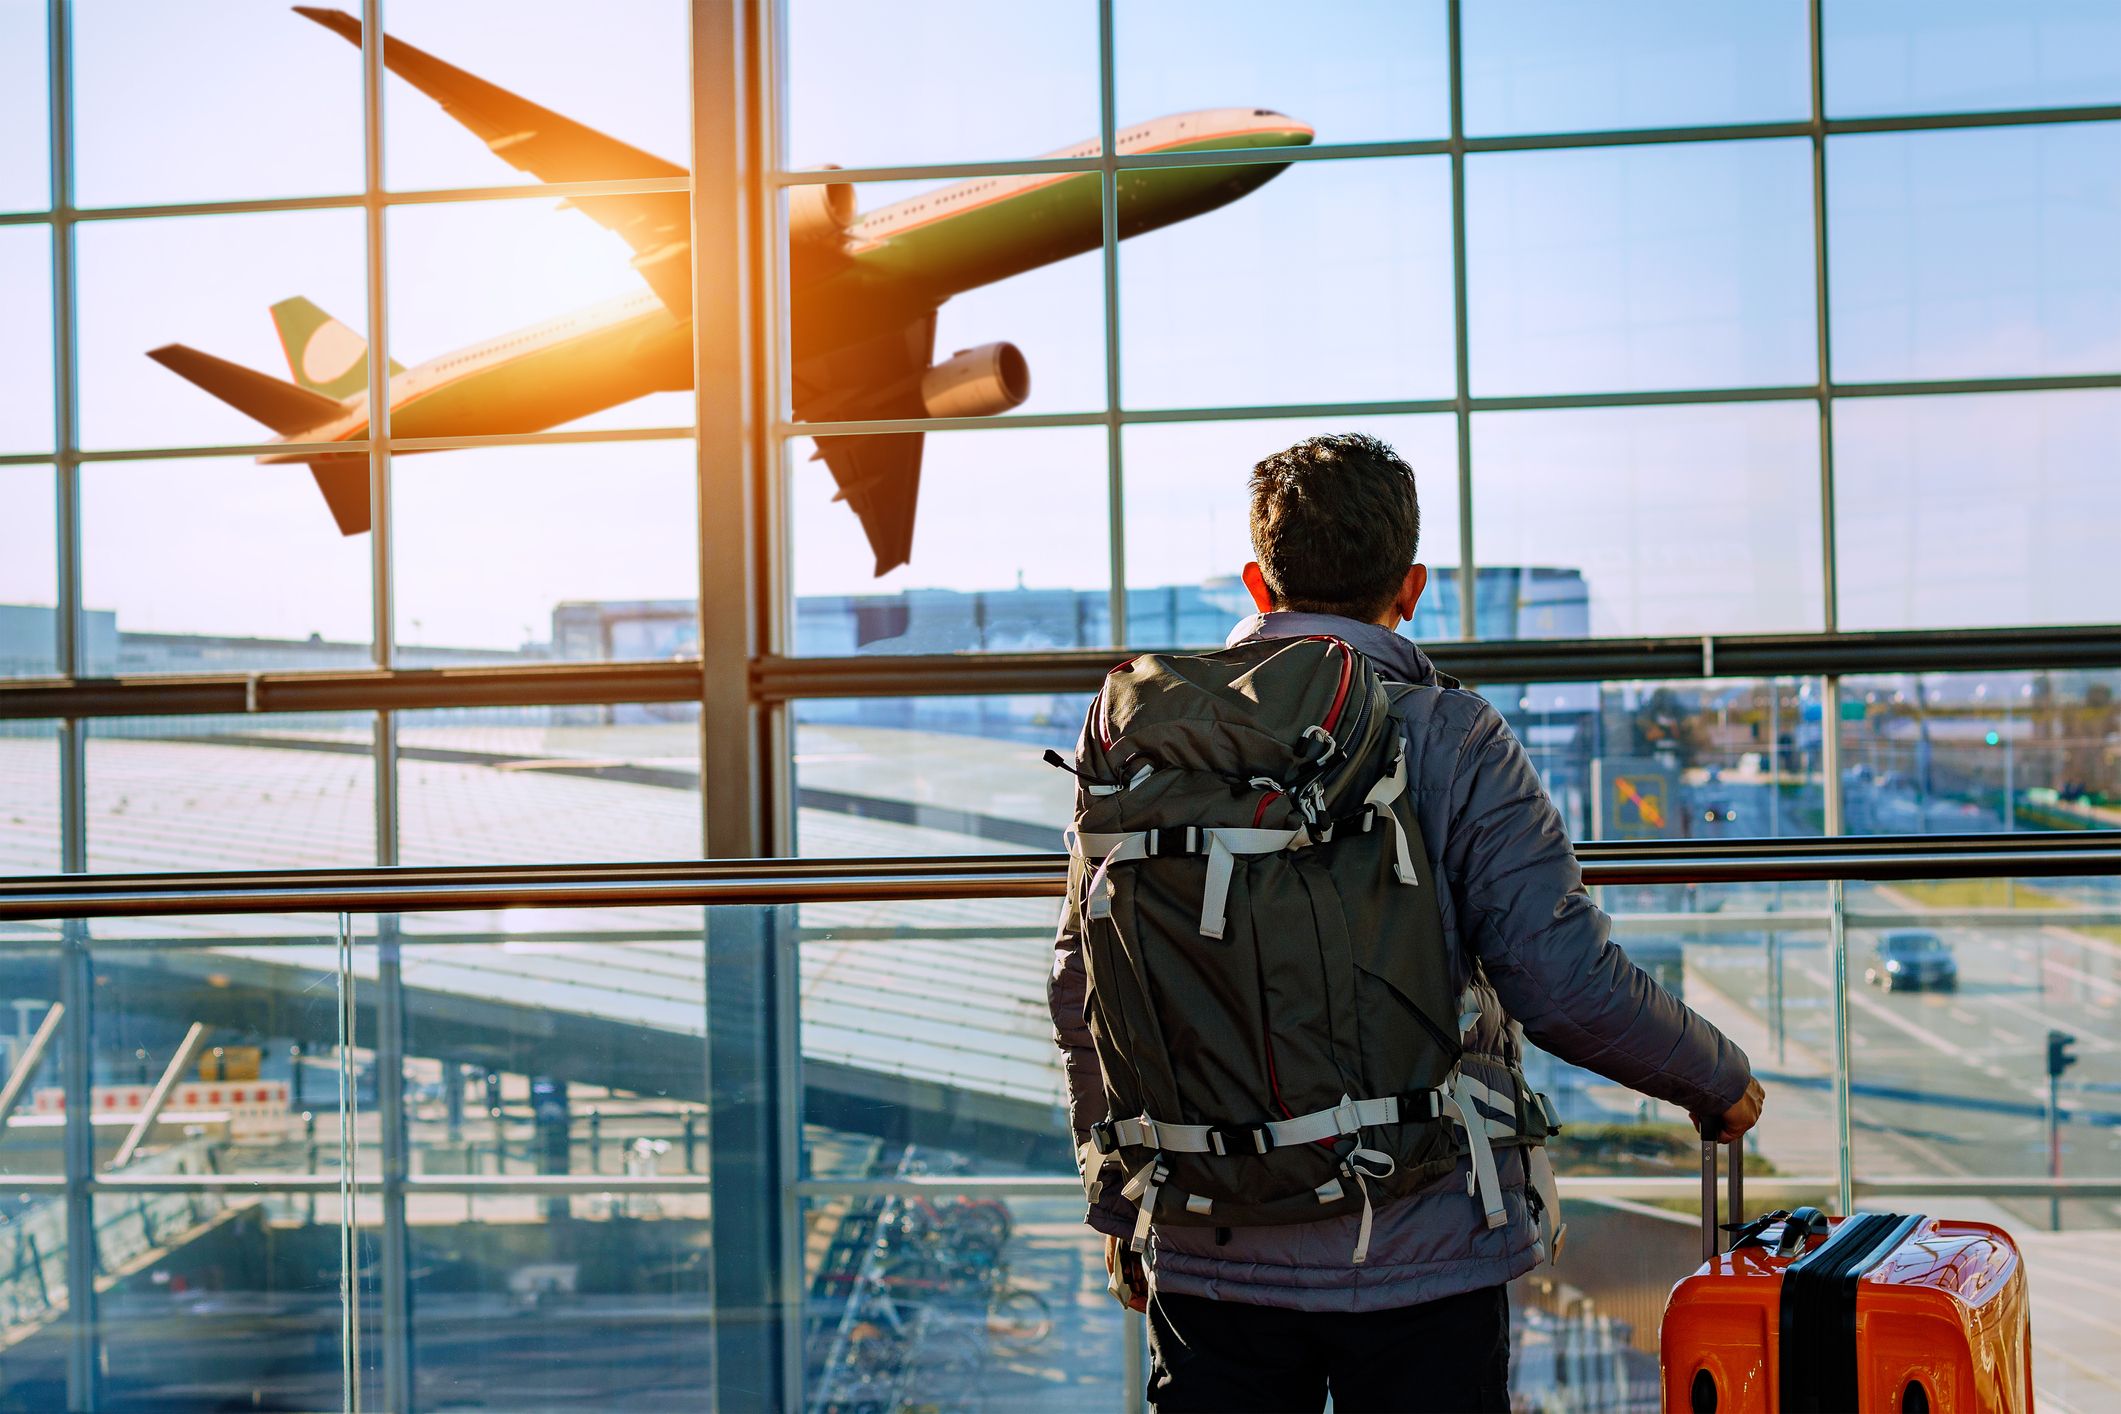 La mochila viral que puedes llevar de equipaje de mano para viajar